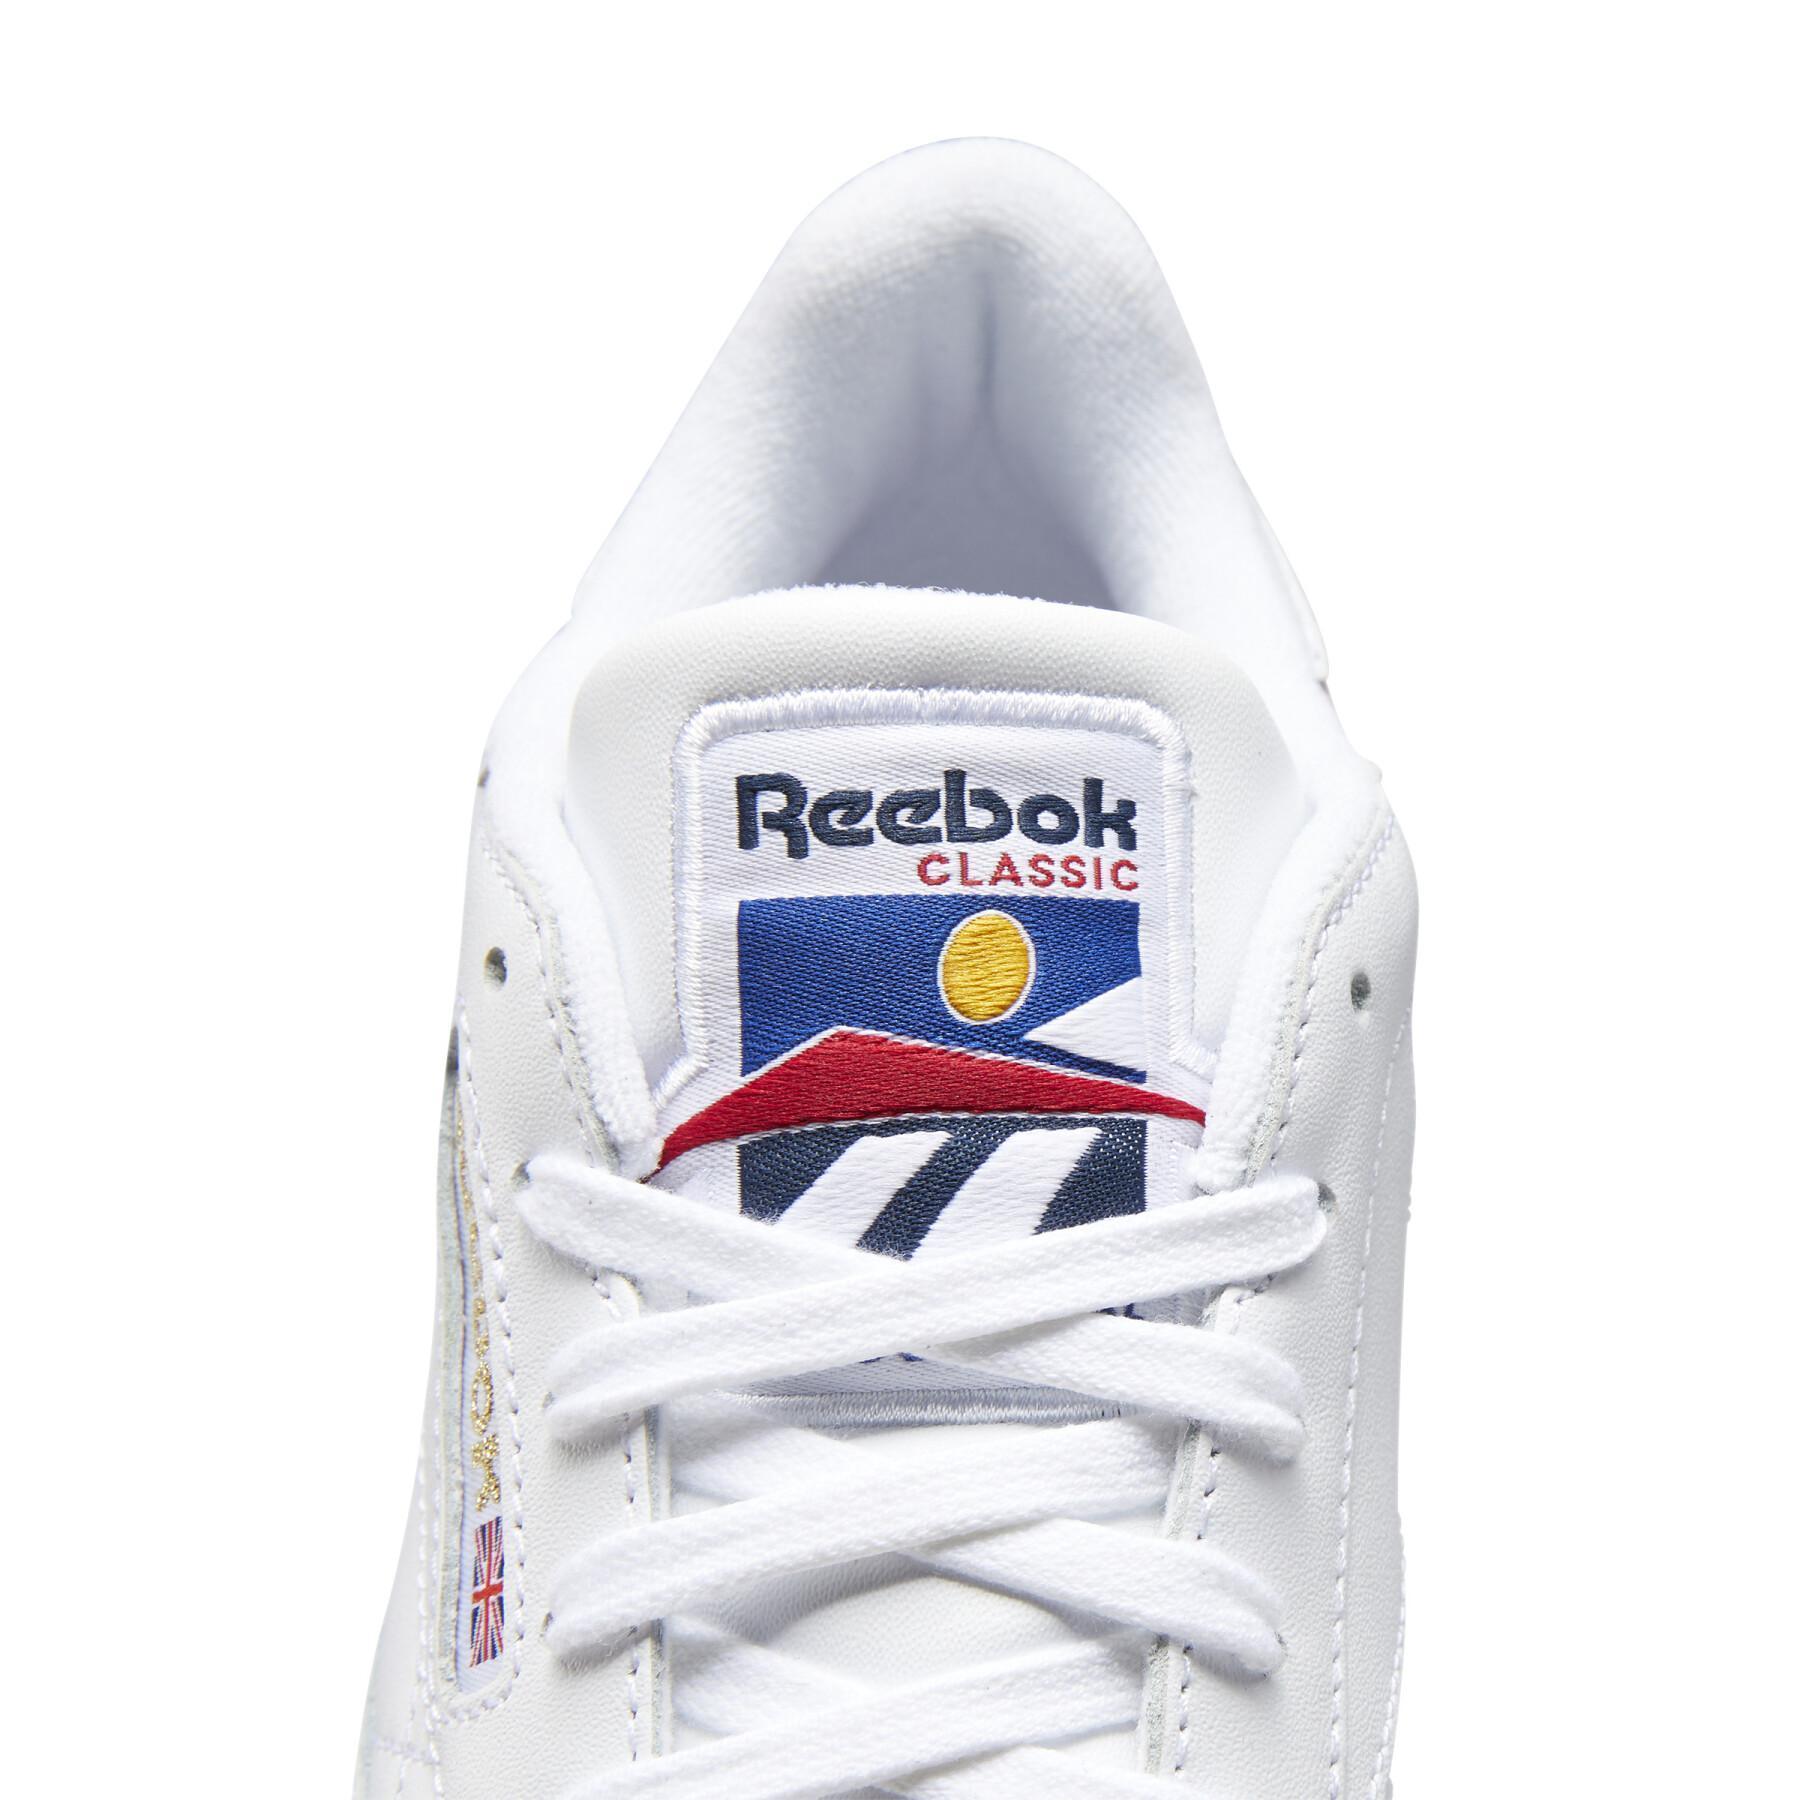 Reebok Club C 85 women's sneakers